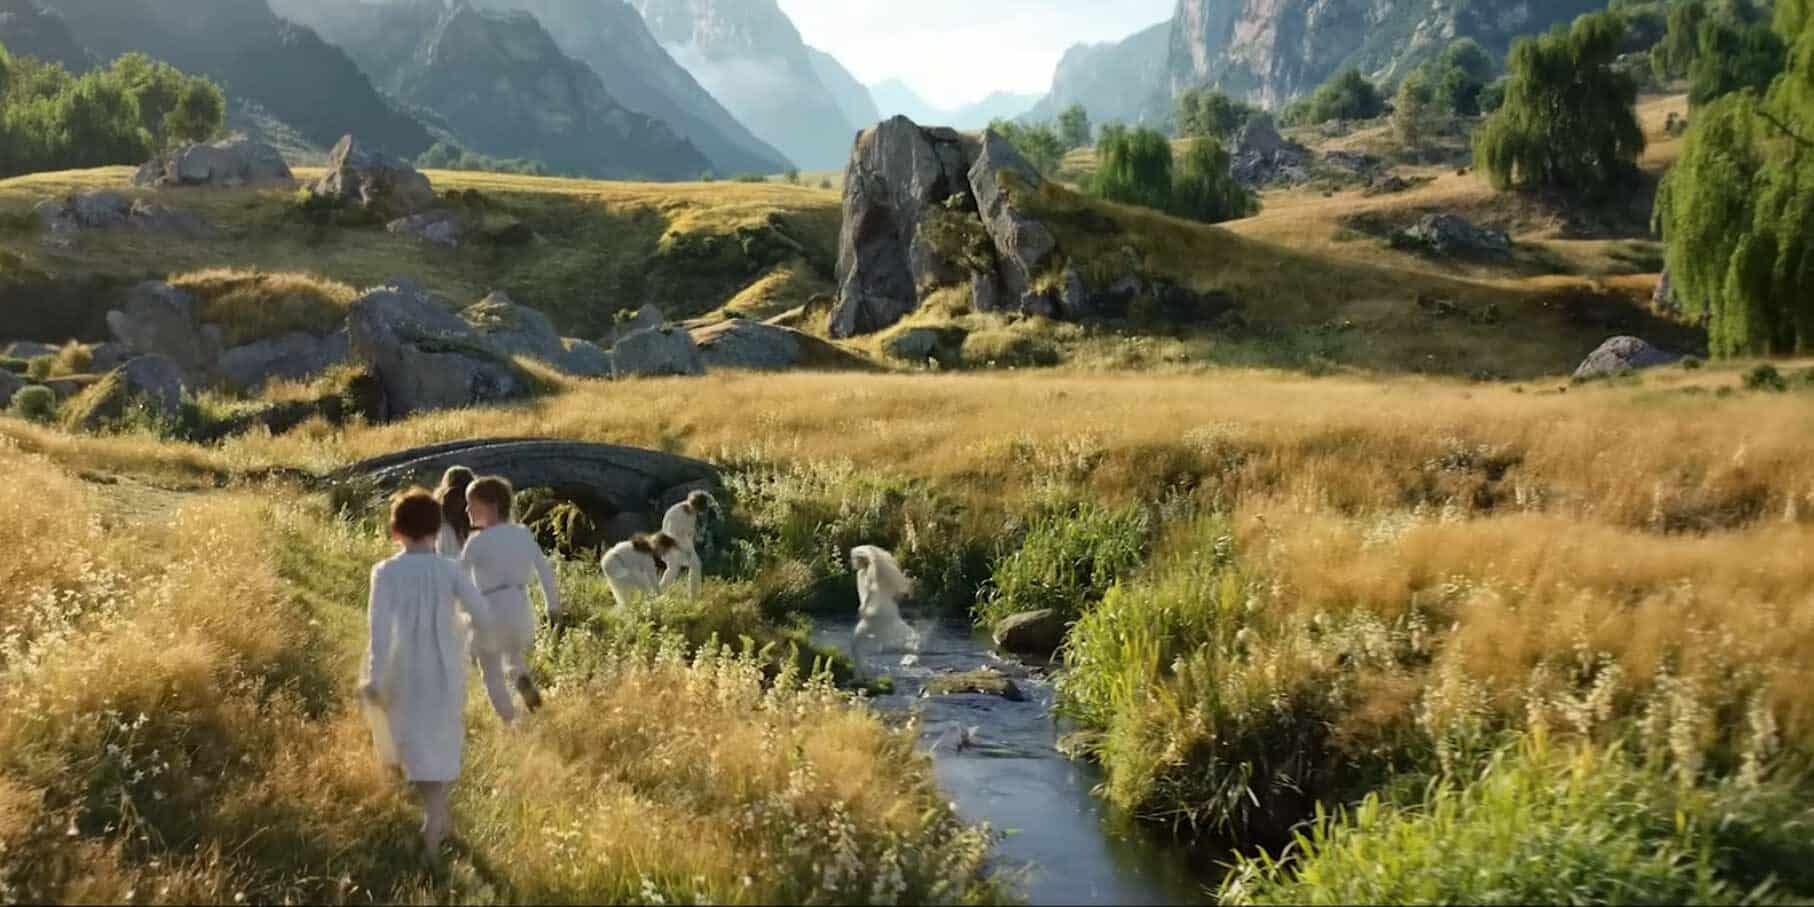 The Lord of the Rings: The Rings of Power épisode 3 critique Adar Amazon Prime Video carnet de voyage lieux familiers lieux de Peter Jackson Cinématographie du Seigneur des Anneaux